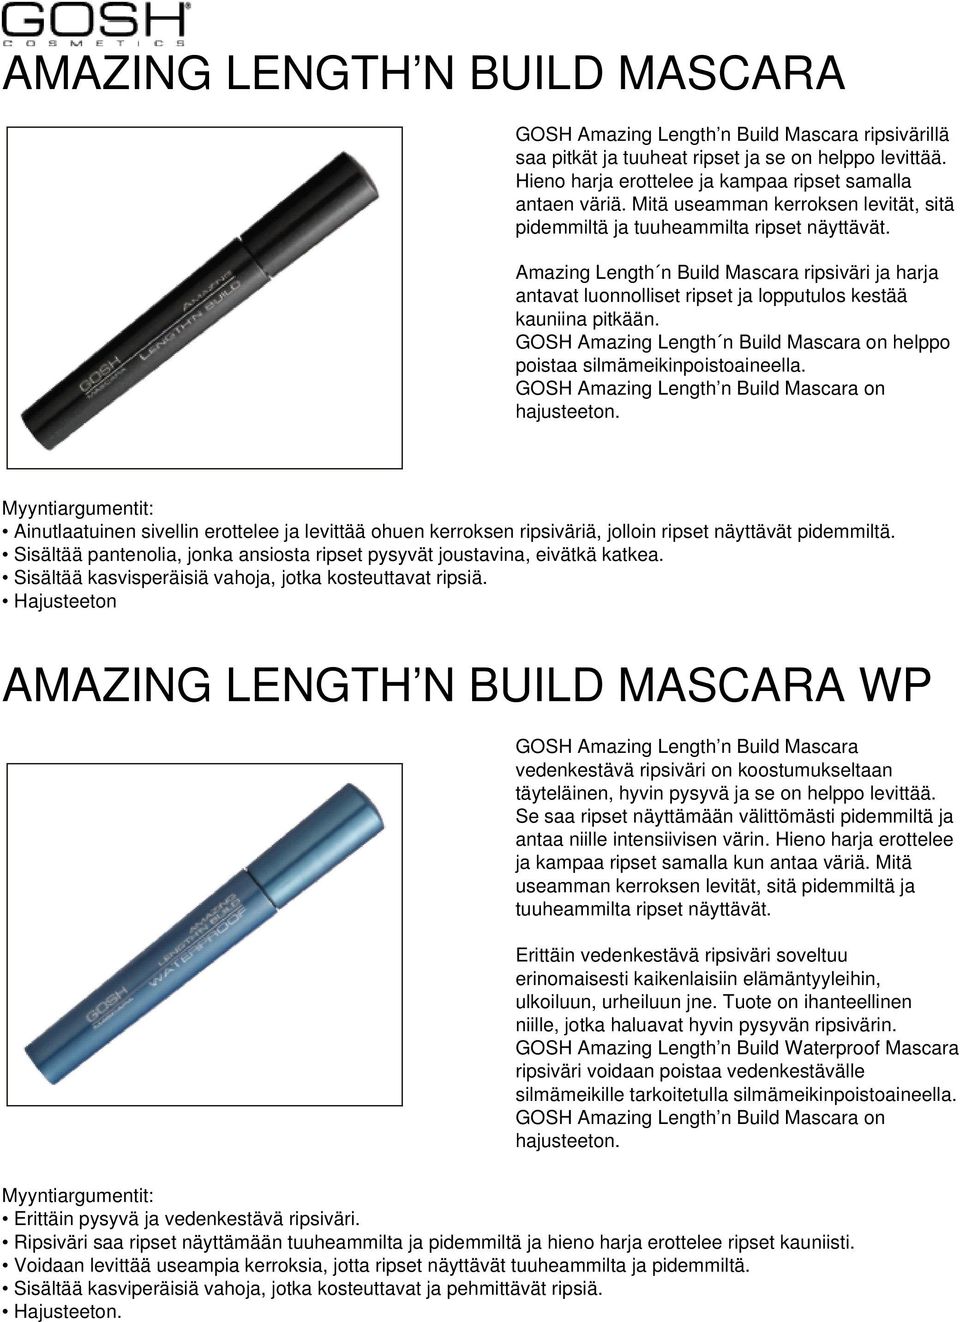 GOSH Amazing Length n Build Mascara on helppo poistaa silmämeikinpoistoaineella. GOSH Amazing Length n Build Mascara on hajusteeton.